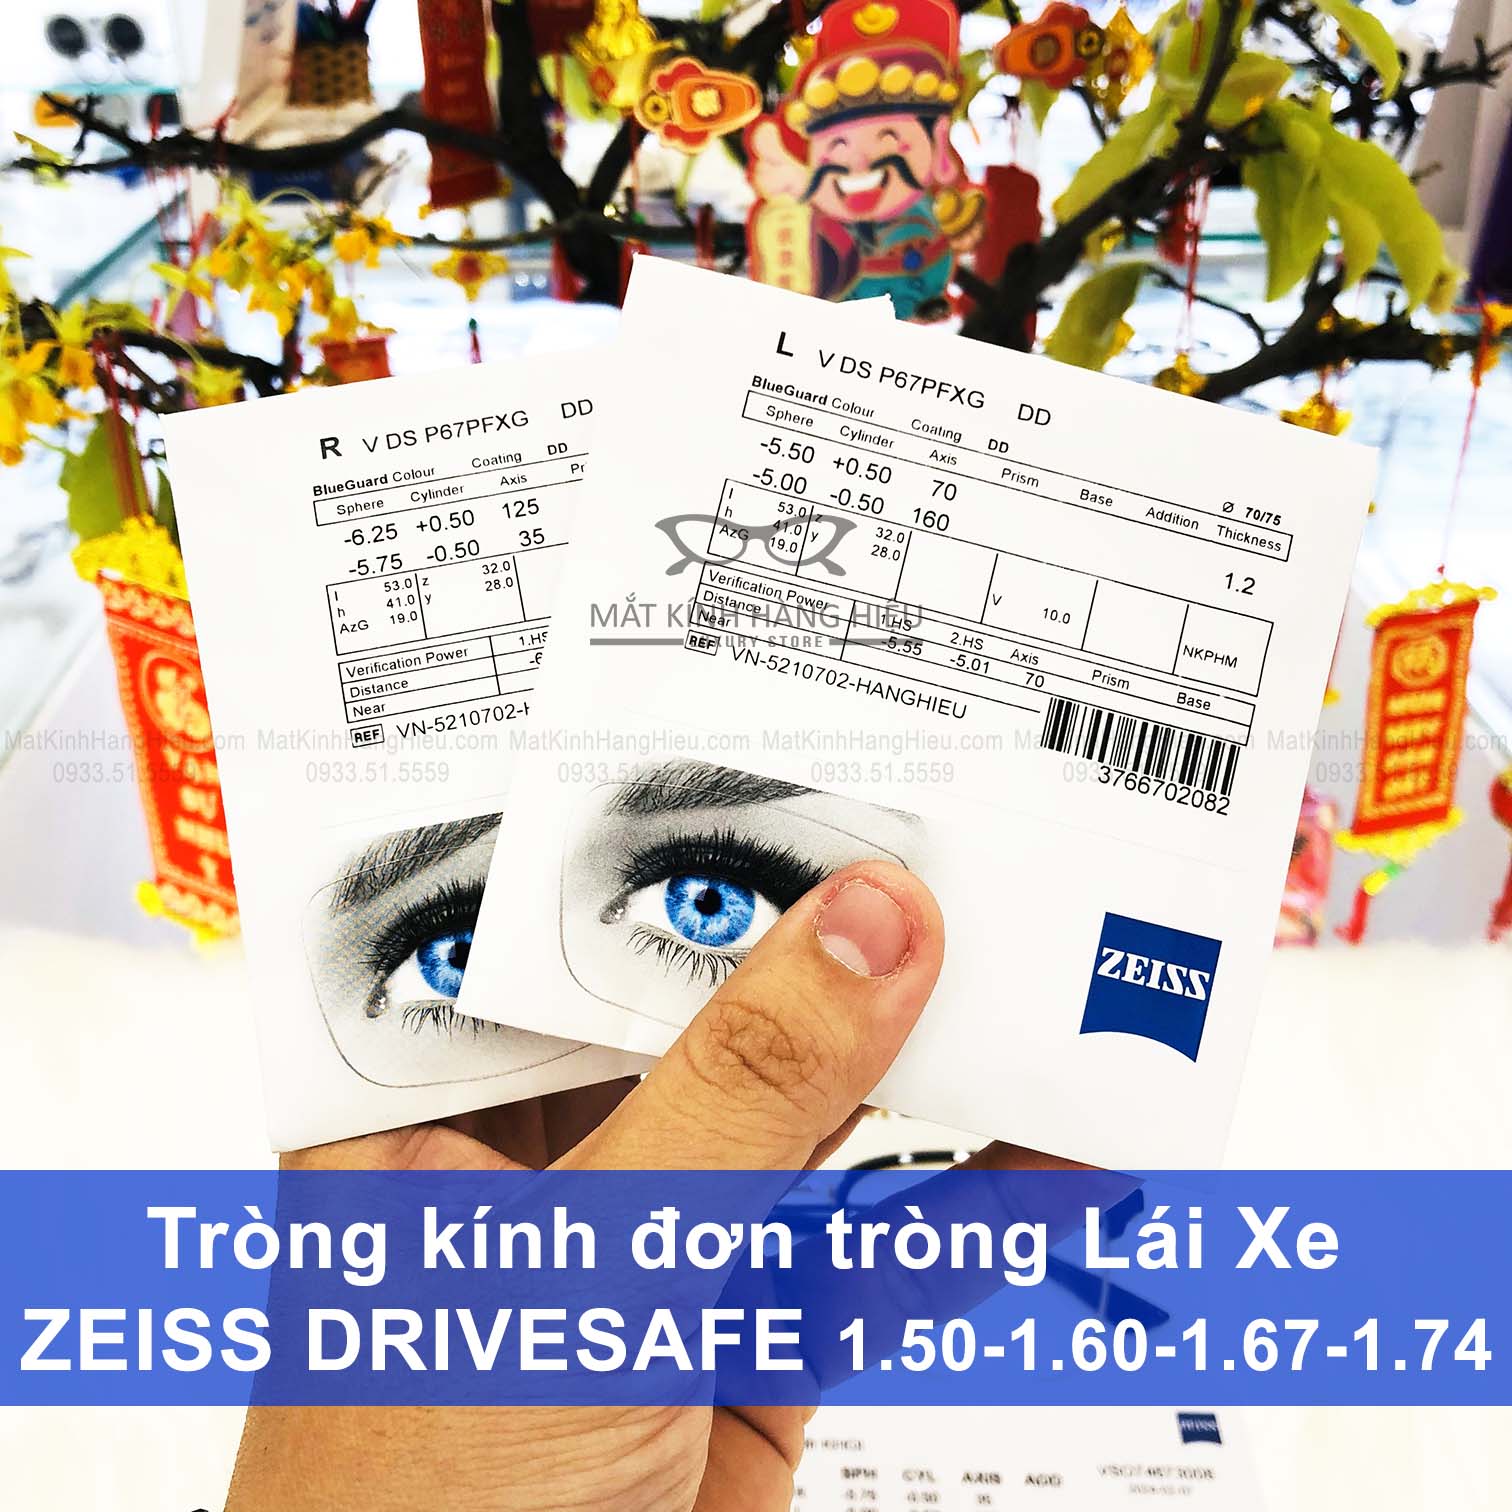 Tròng kính đơn tròng Zeiss DriveSafe - Tròng kính lái xe